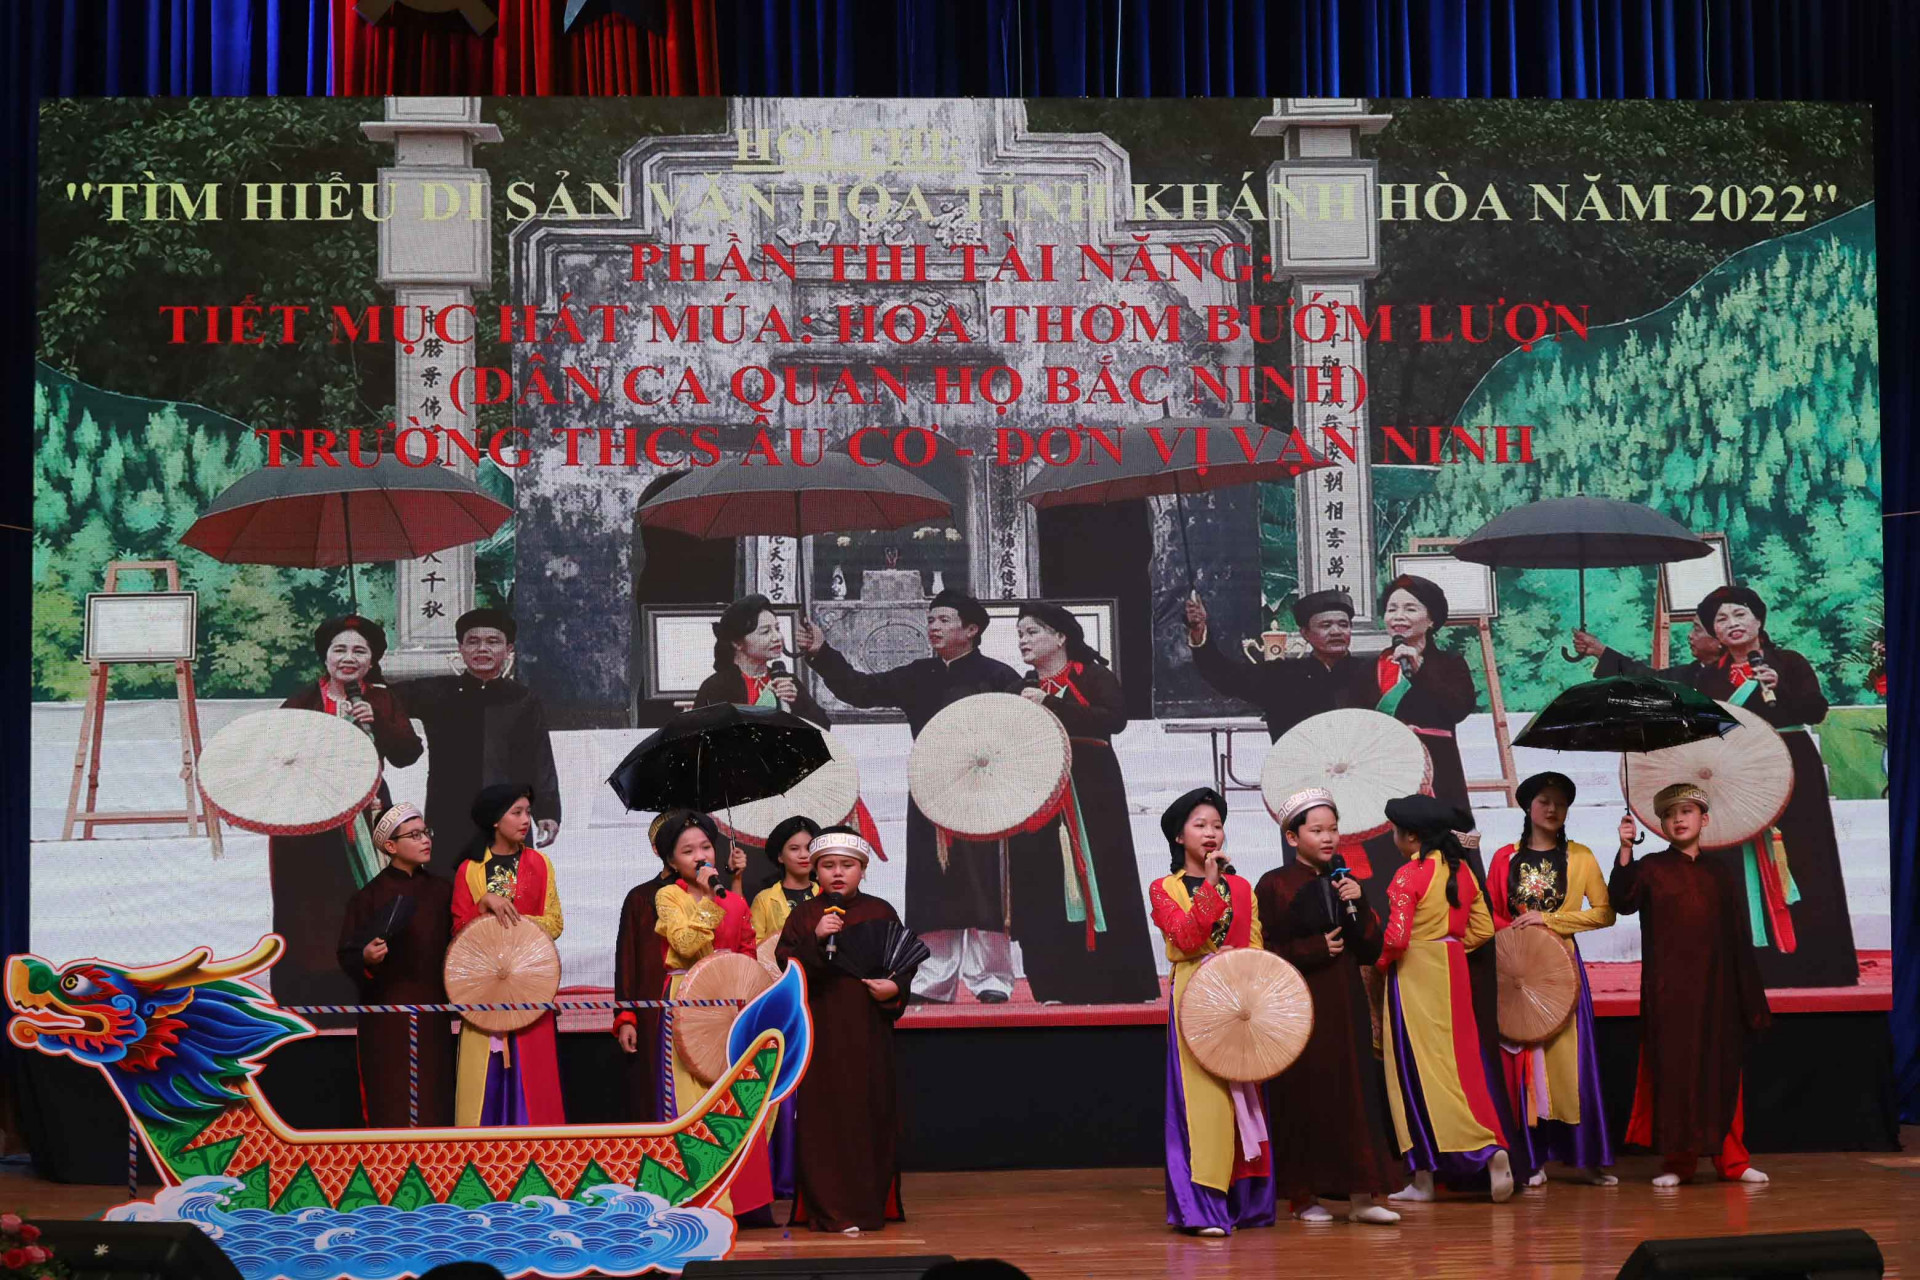 Quan ho performance of Van Ninh’s school